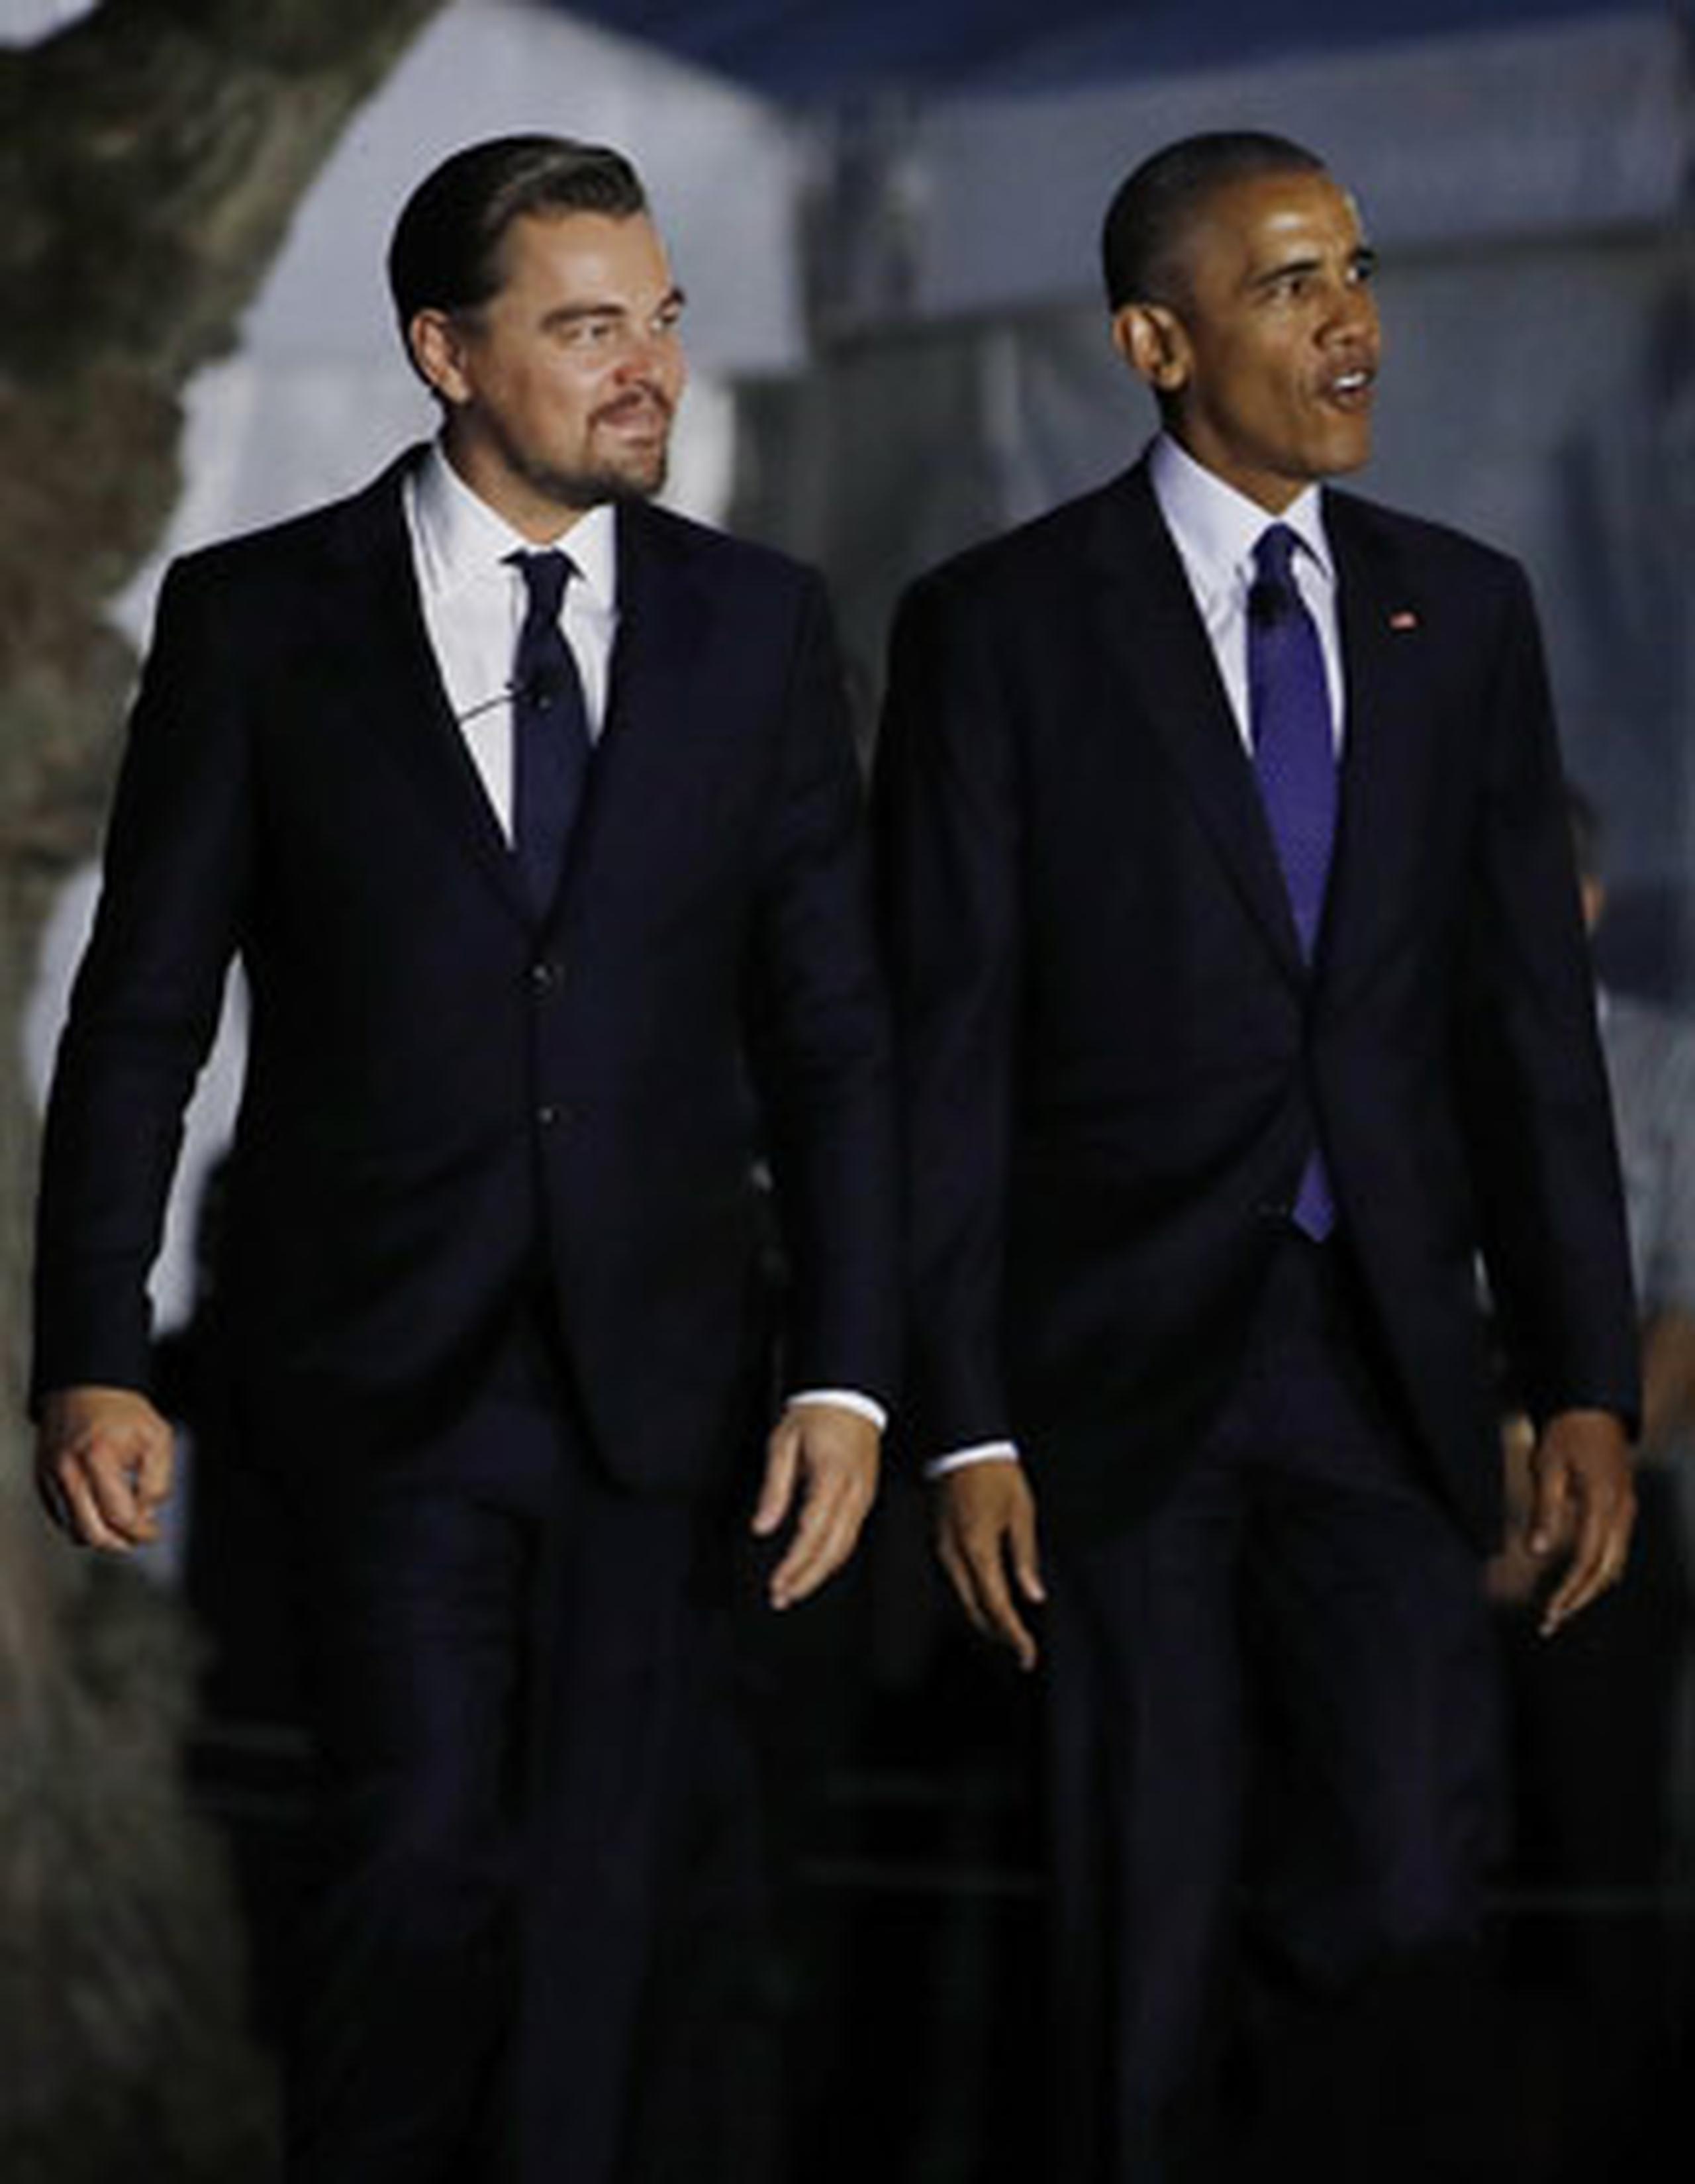 DiCaprio presentó en el festival celebrado en la Casa Blanca su documental "Before The Flood". (AP/Carolyn Kaster)